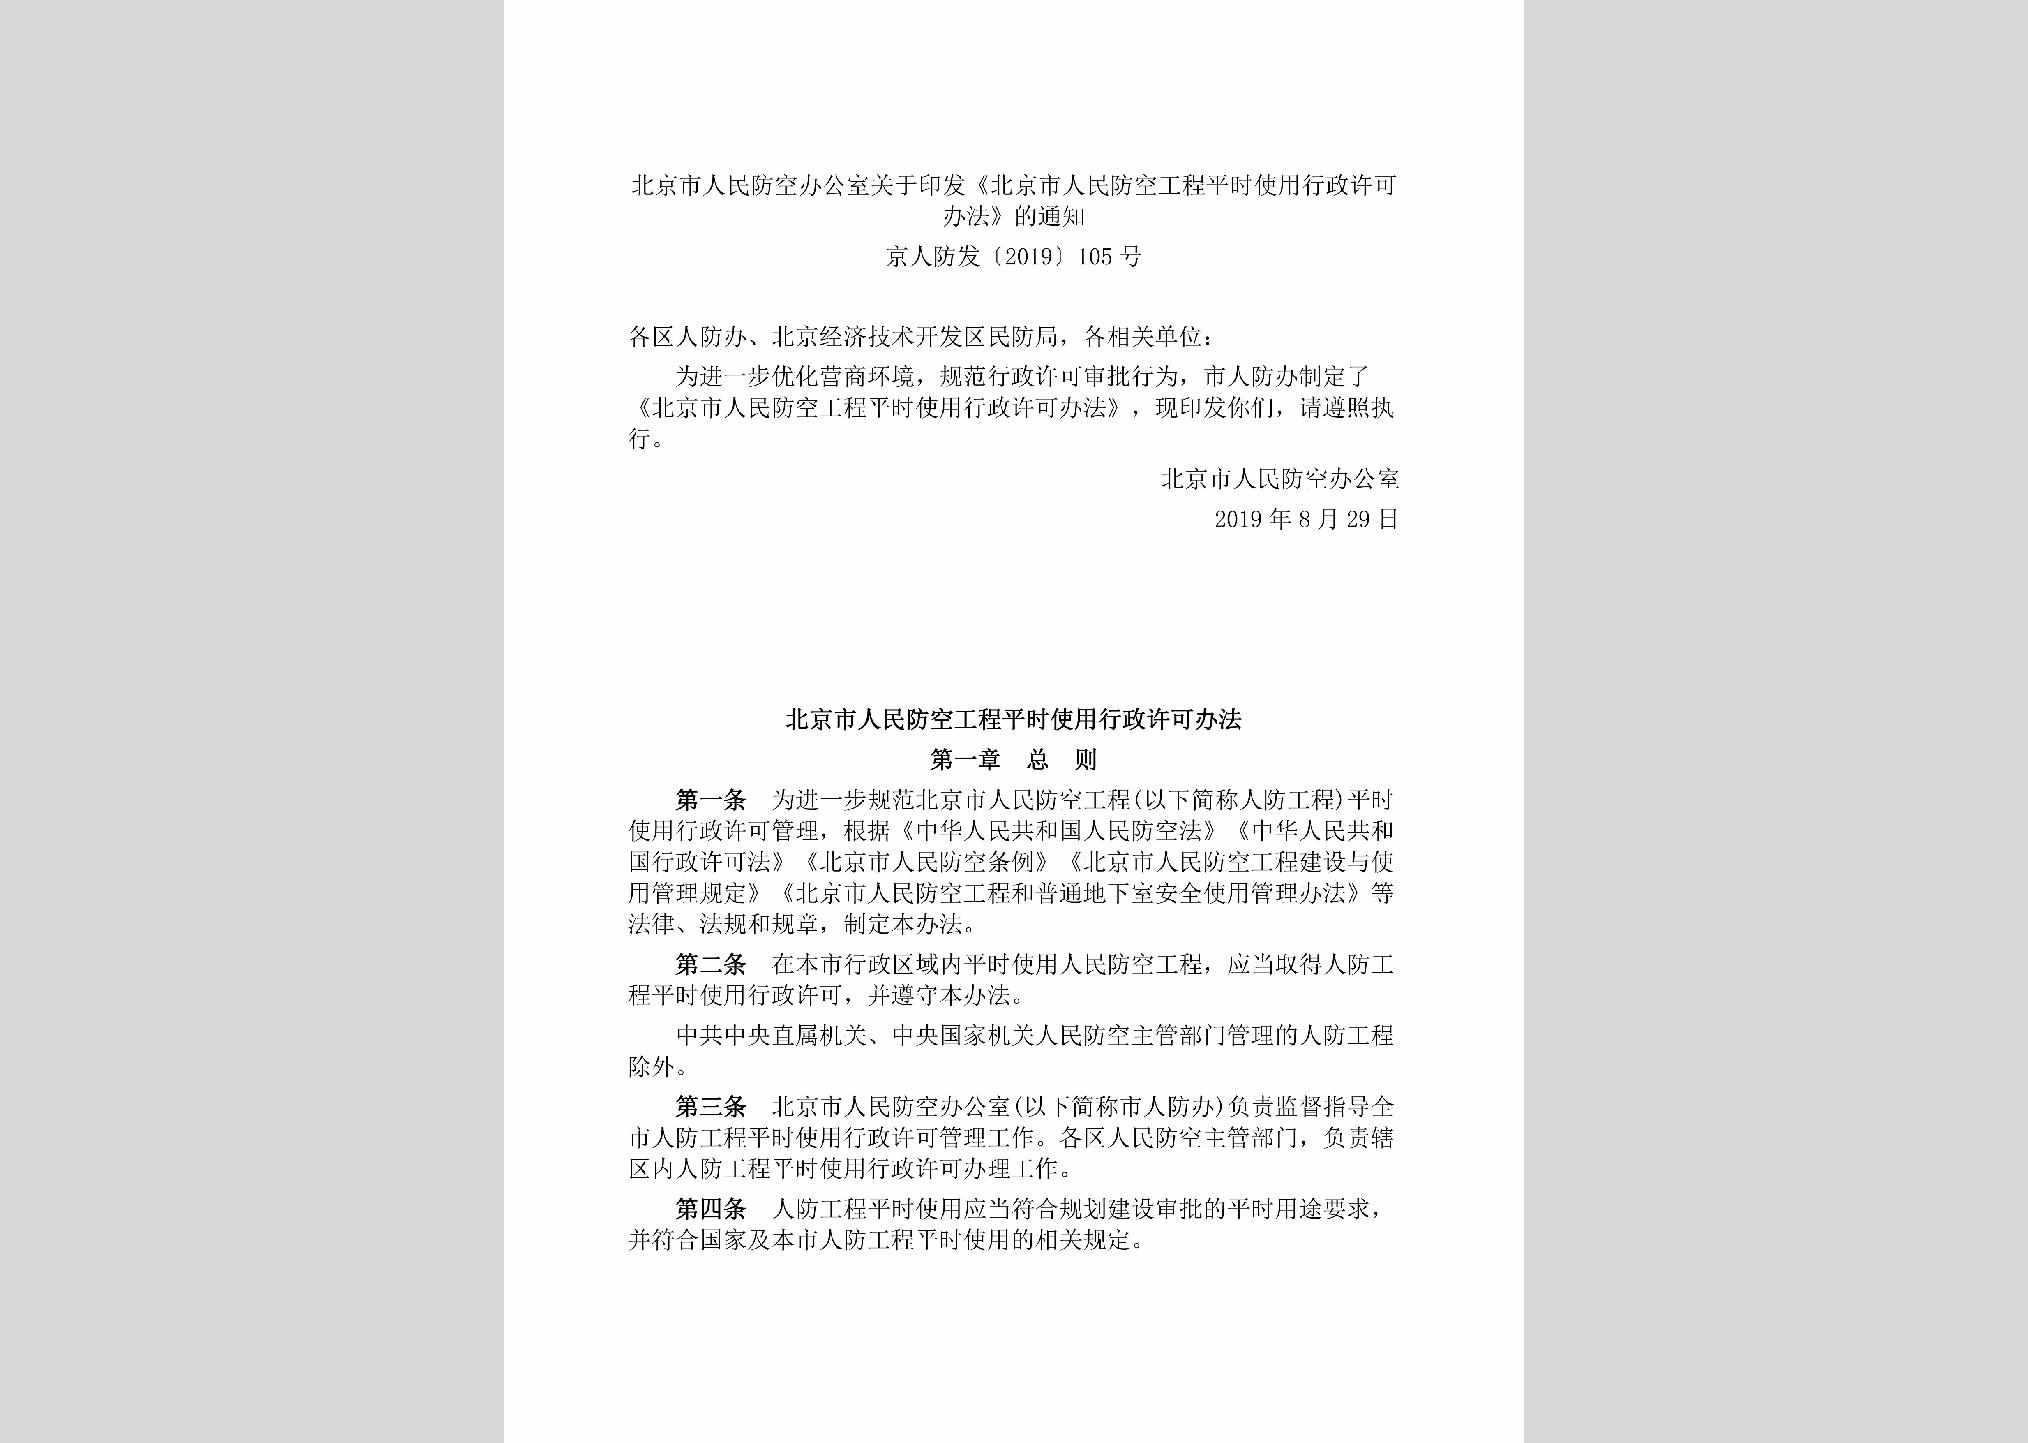 京人防发[2019]105号：北京市人民防空办公室关于印发《北京市人民防空工程平时使用行政许可办法》的通知